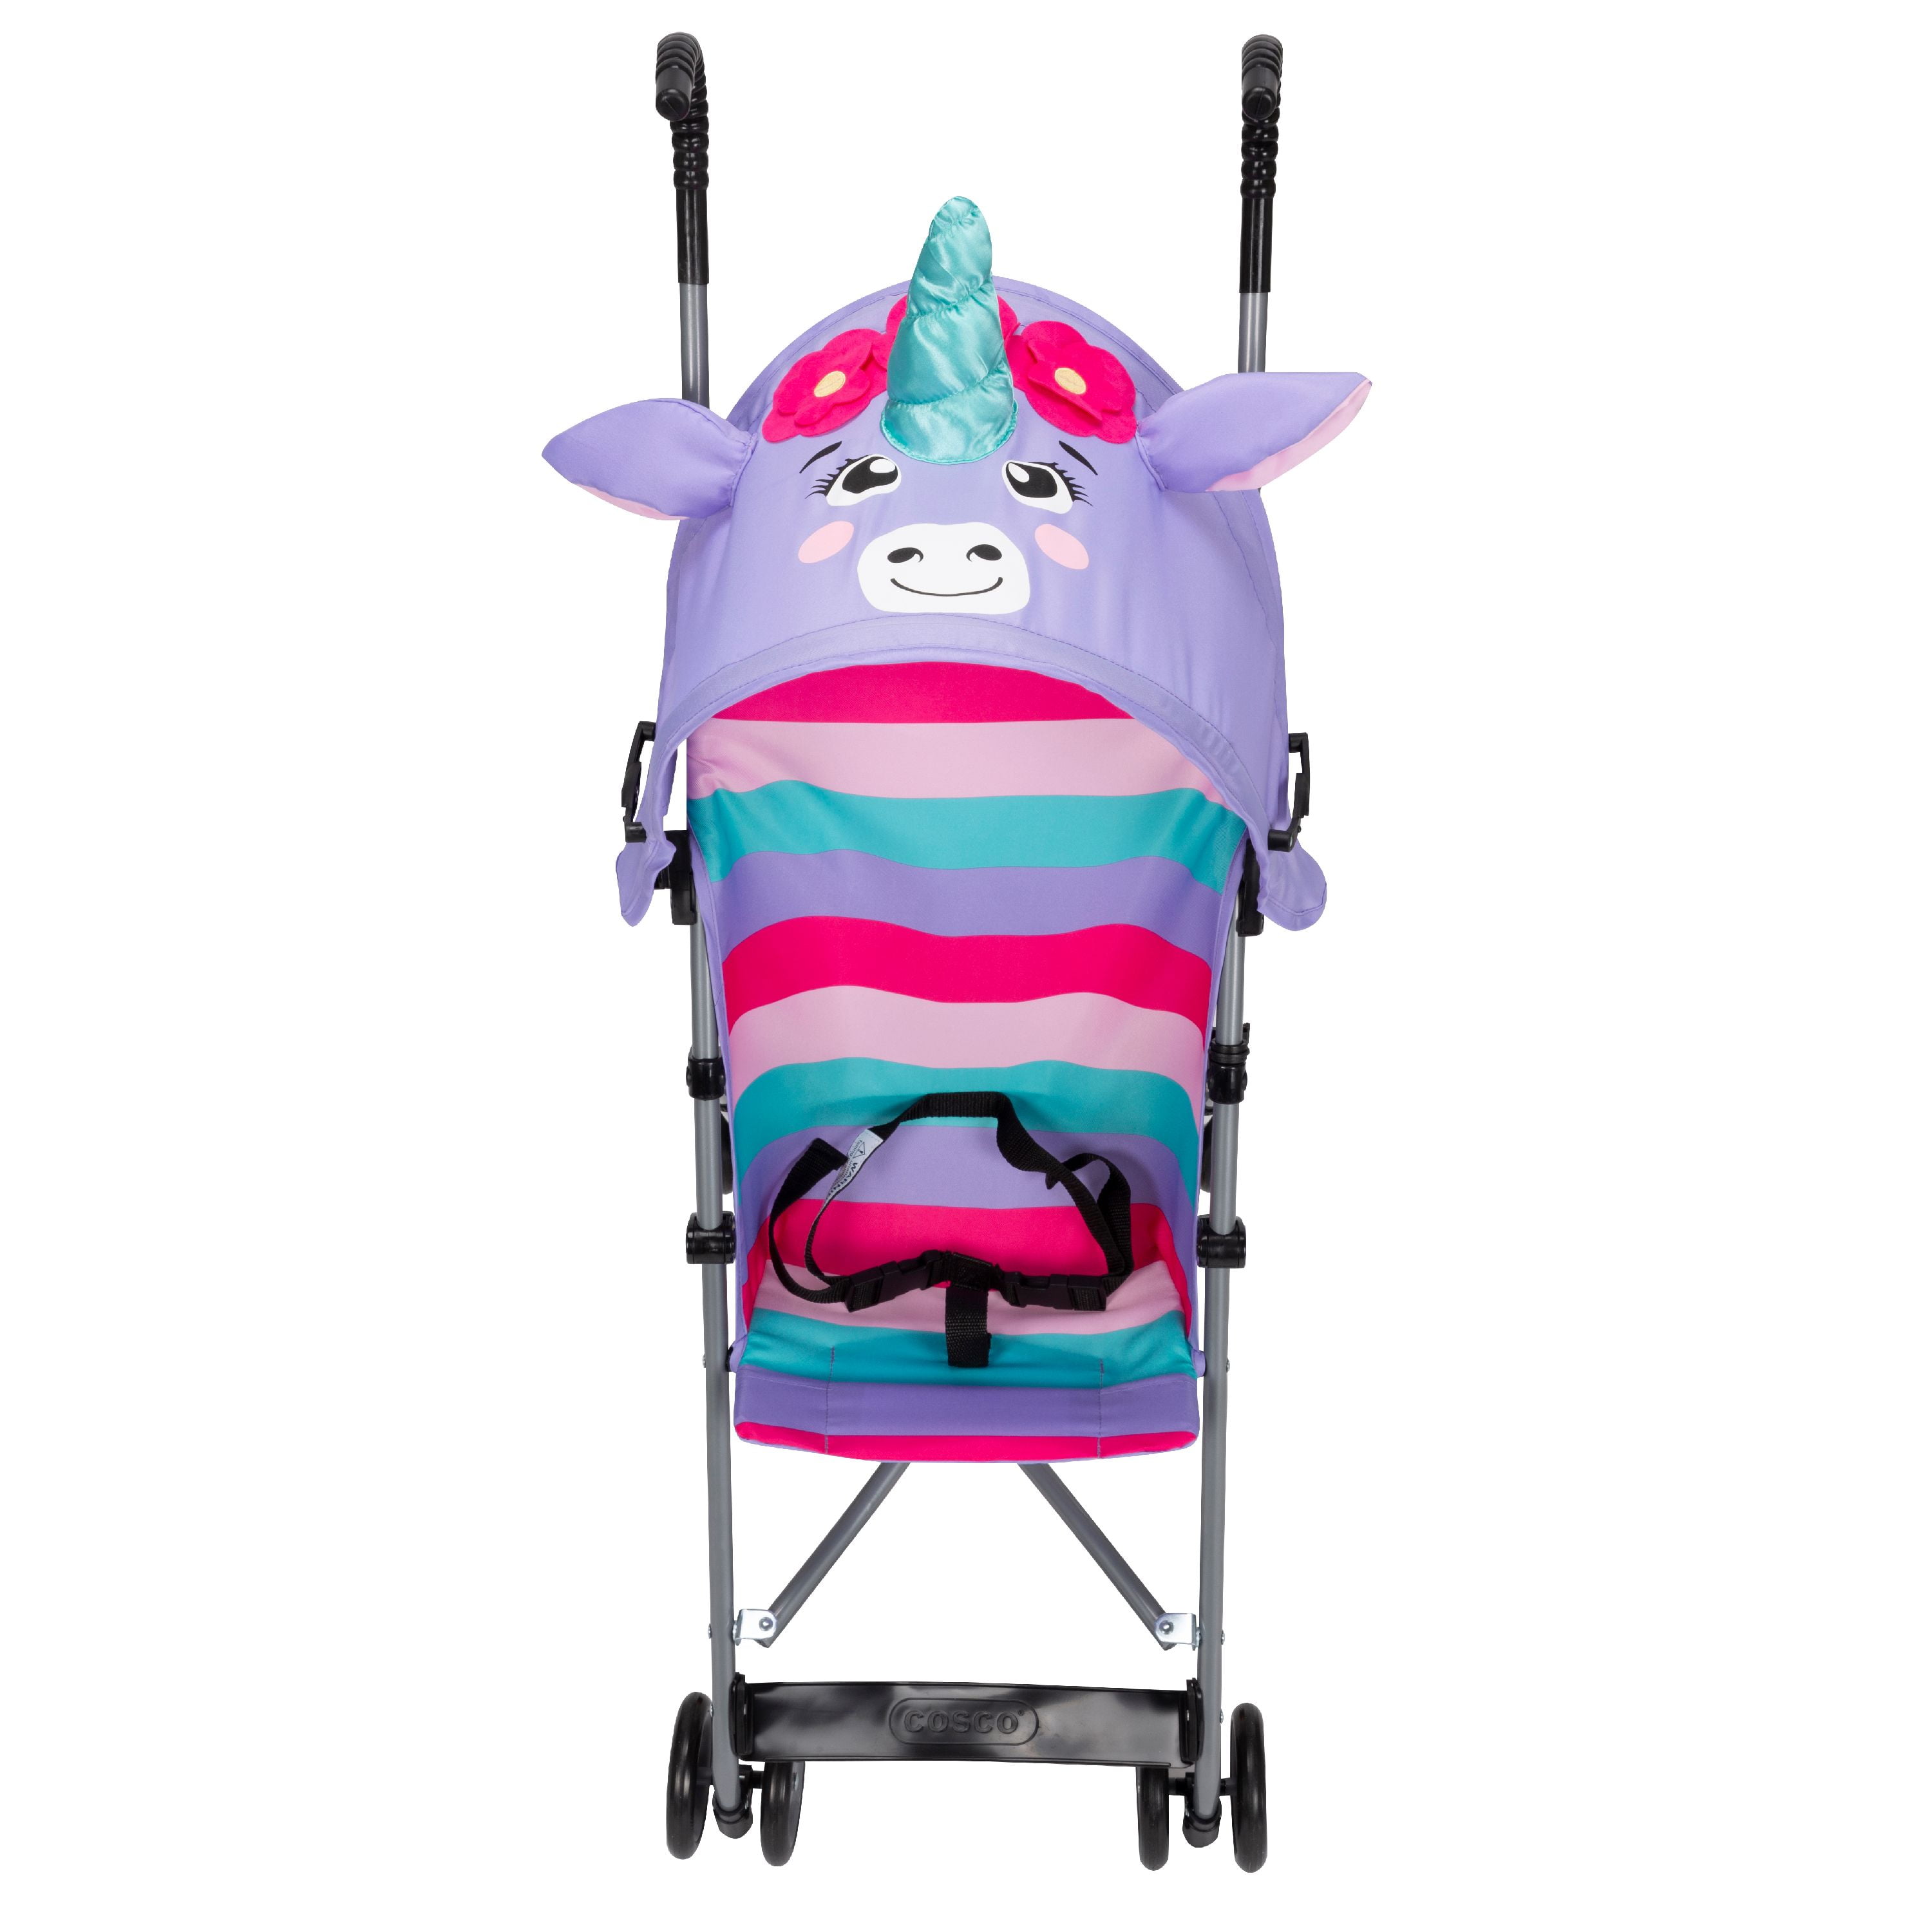 unicorn baby stroller